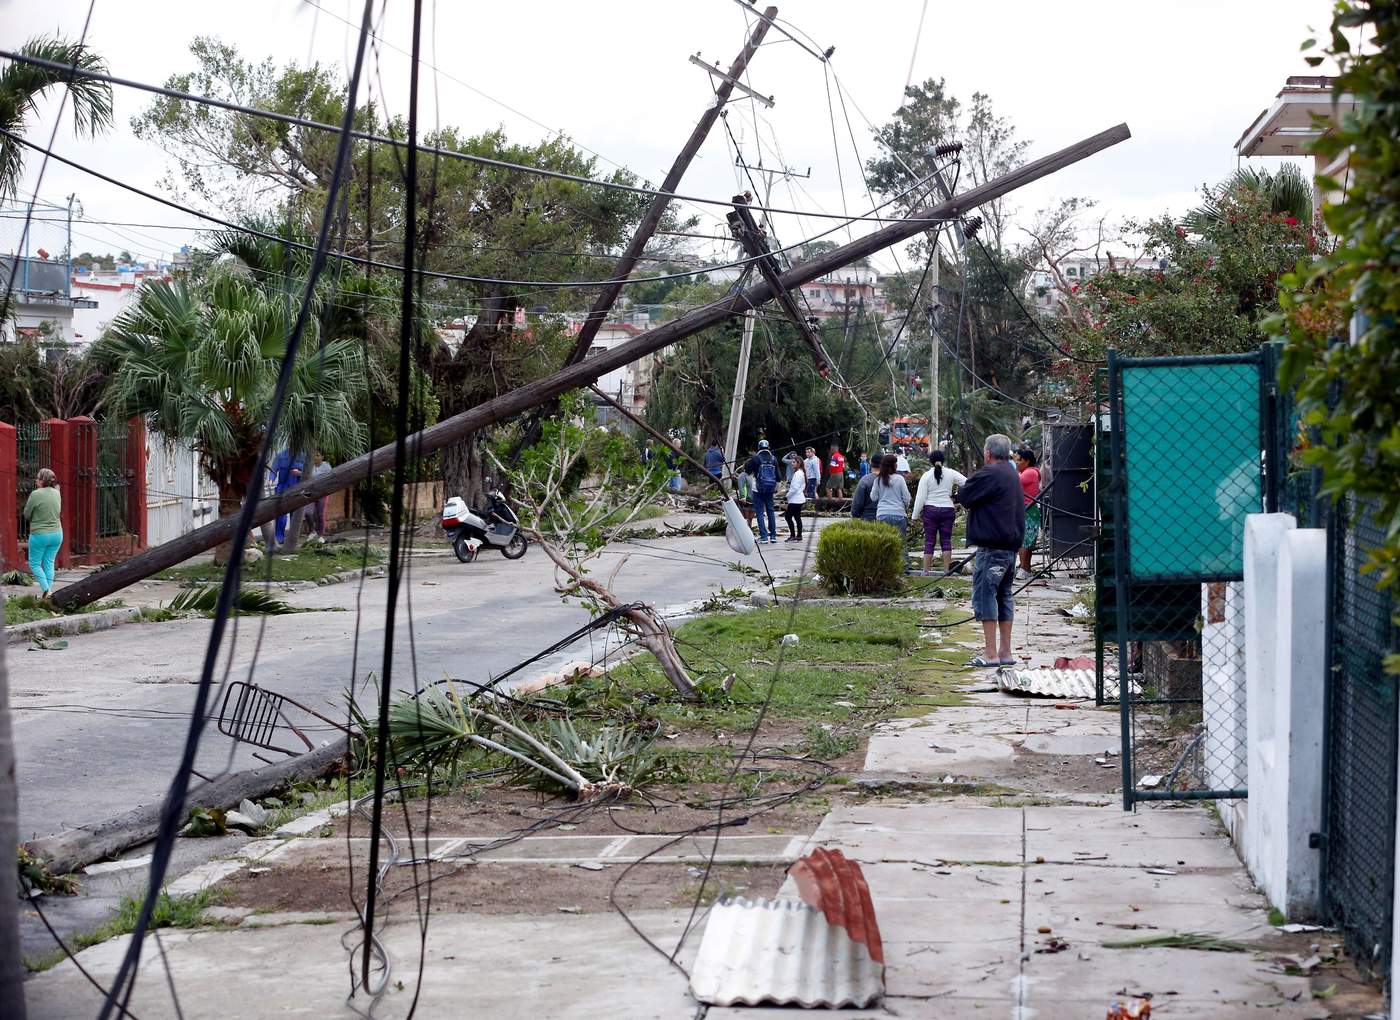 Díaz-Canel también visitó el municipio de Guanabacoa, golpeado por el tornado, que habría sido parte de la línea de tormentas locales severas formadas delante del frente frío que cruzó por las provincias de Pinar del Río, Mayabeque y La Habana. (EFE)